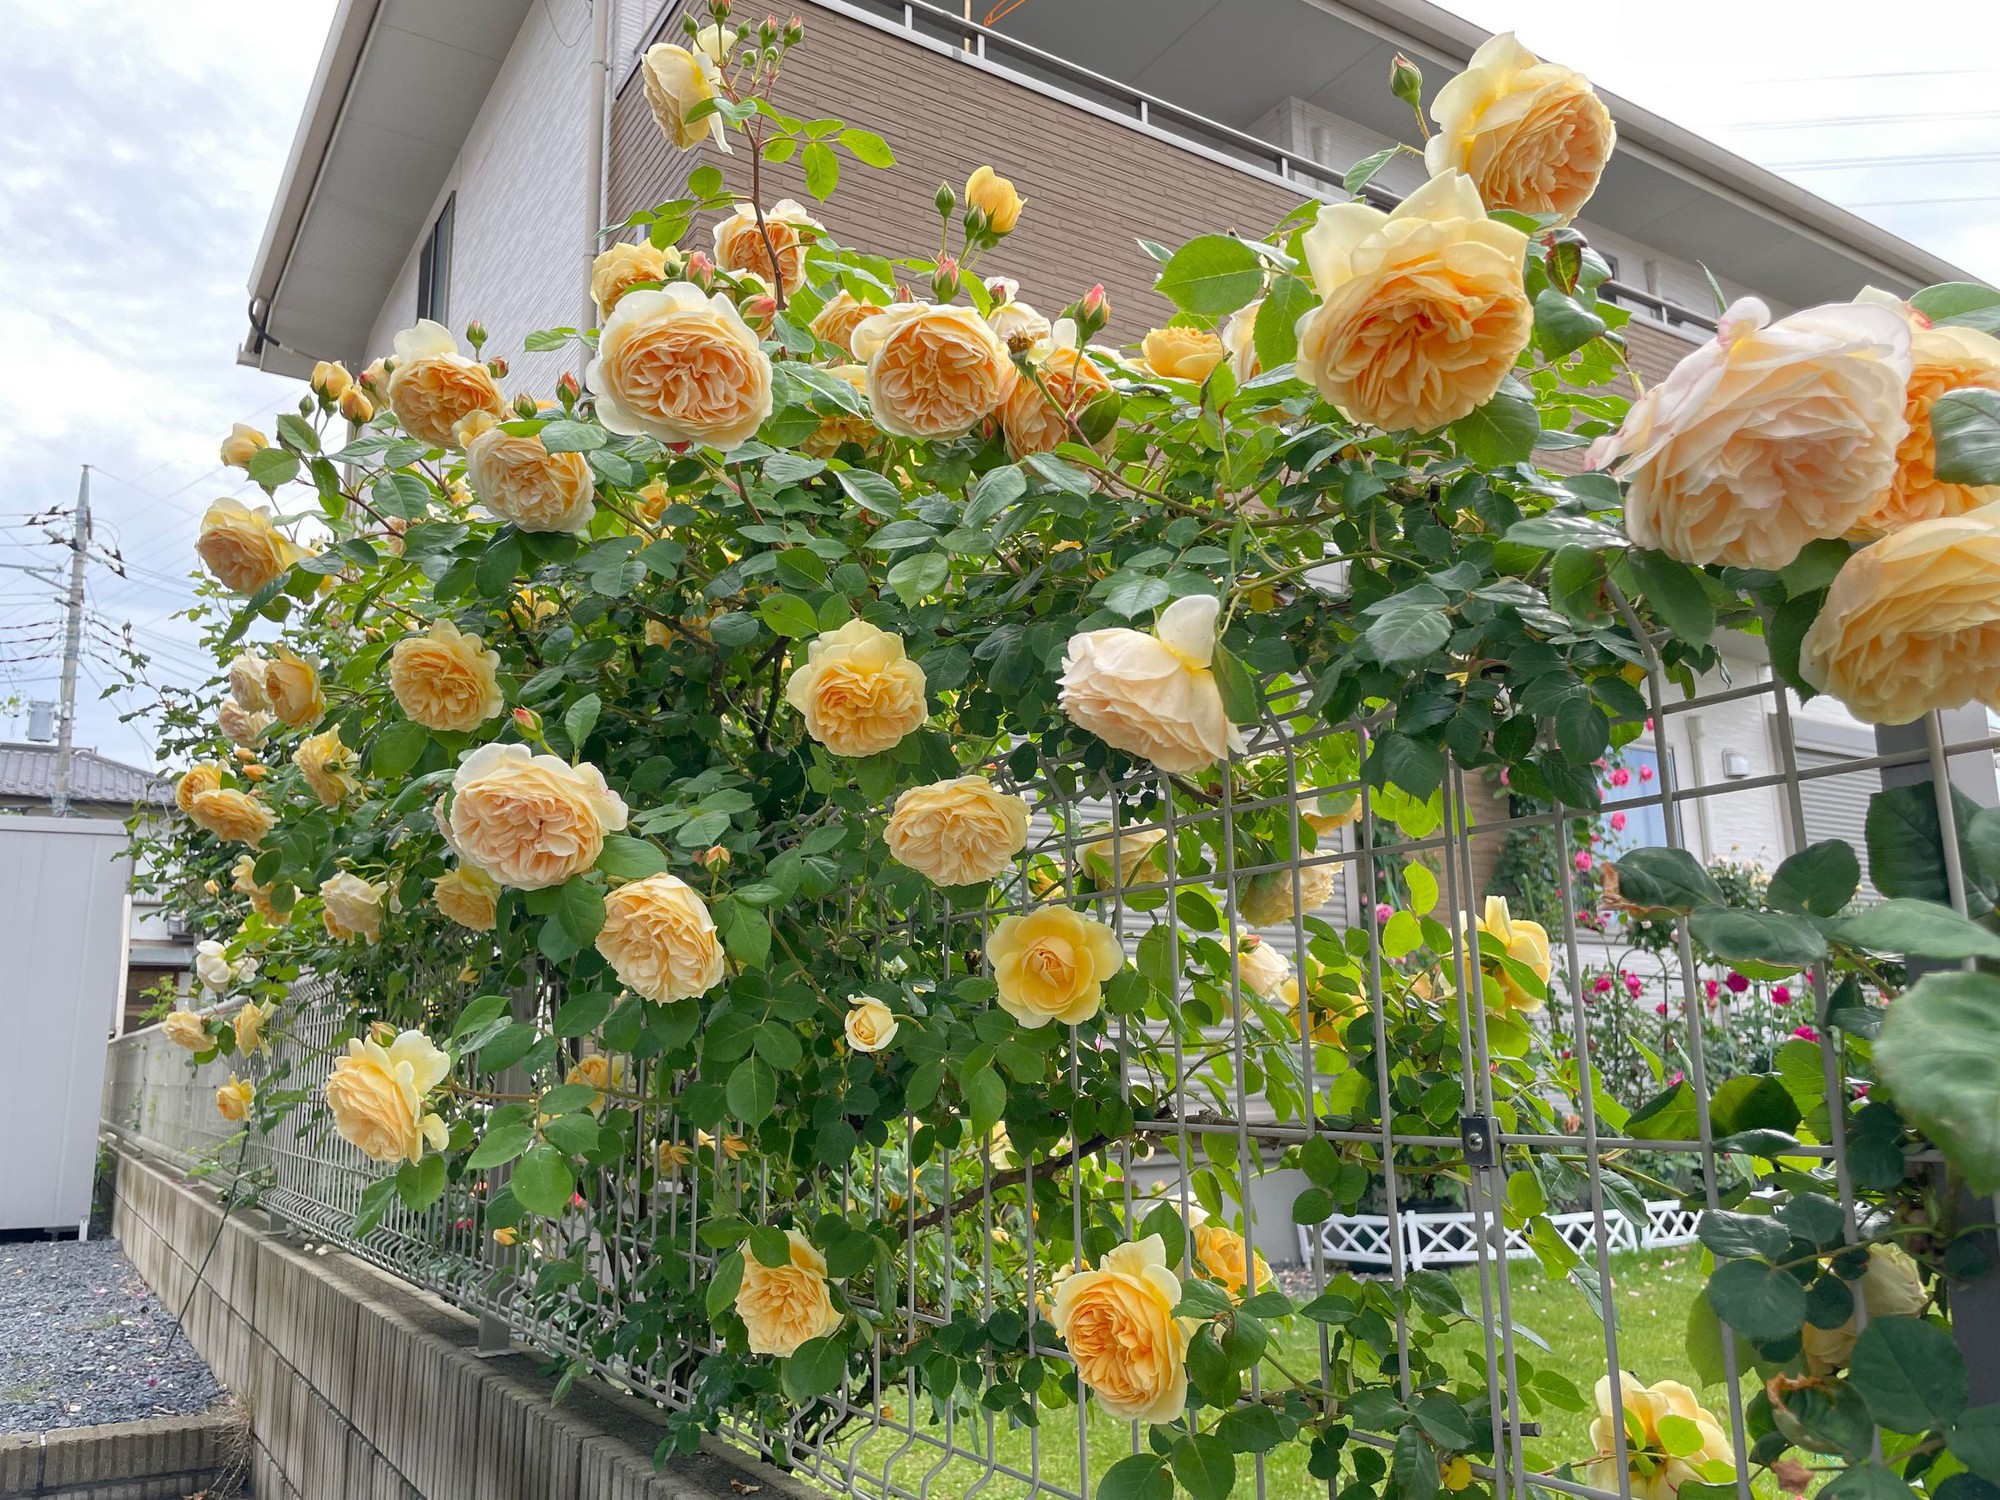 Ngôi nhà lúc nào cũng thơm nức mùi hoa vì có vườn hồng hơn 80 loại của mẹ Việt ở Nhật- Ảnh 7.